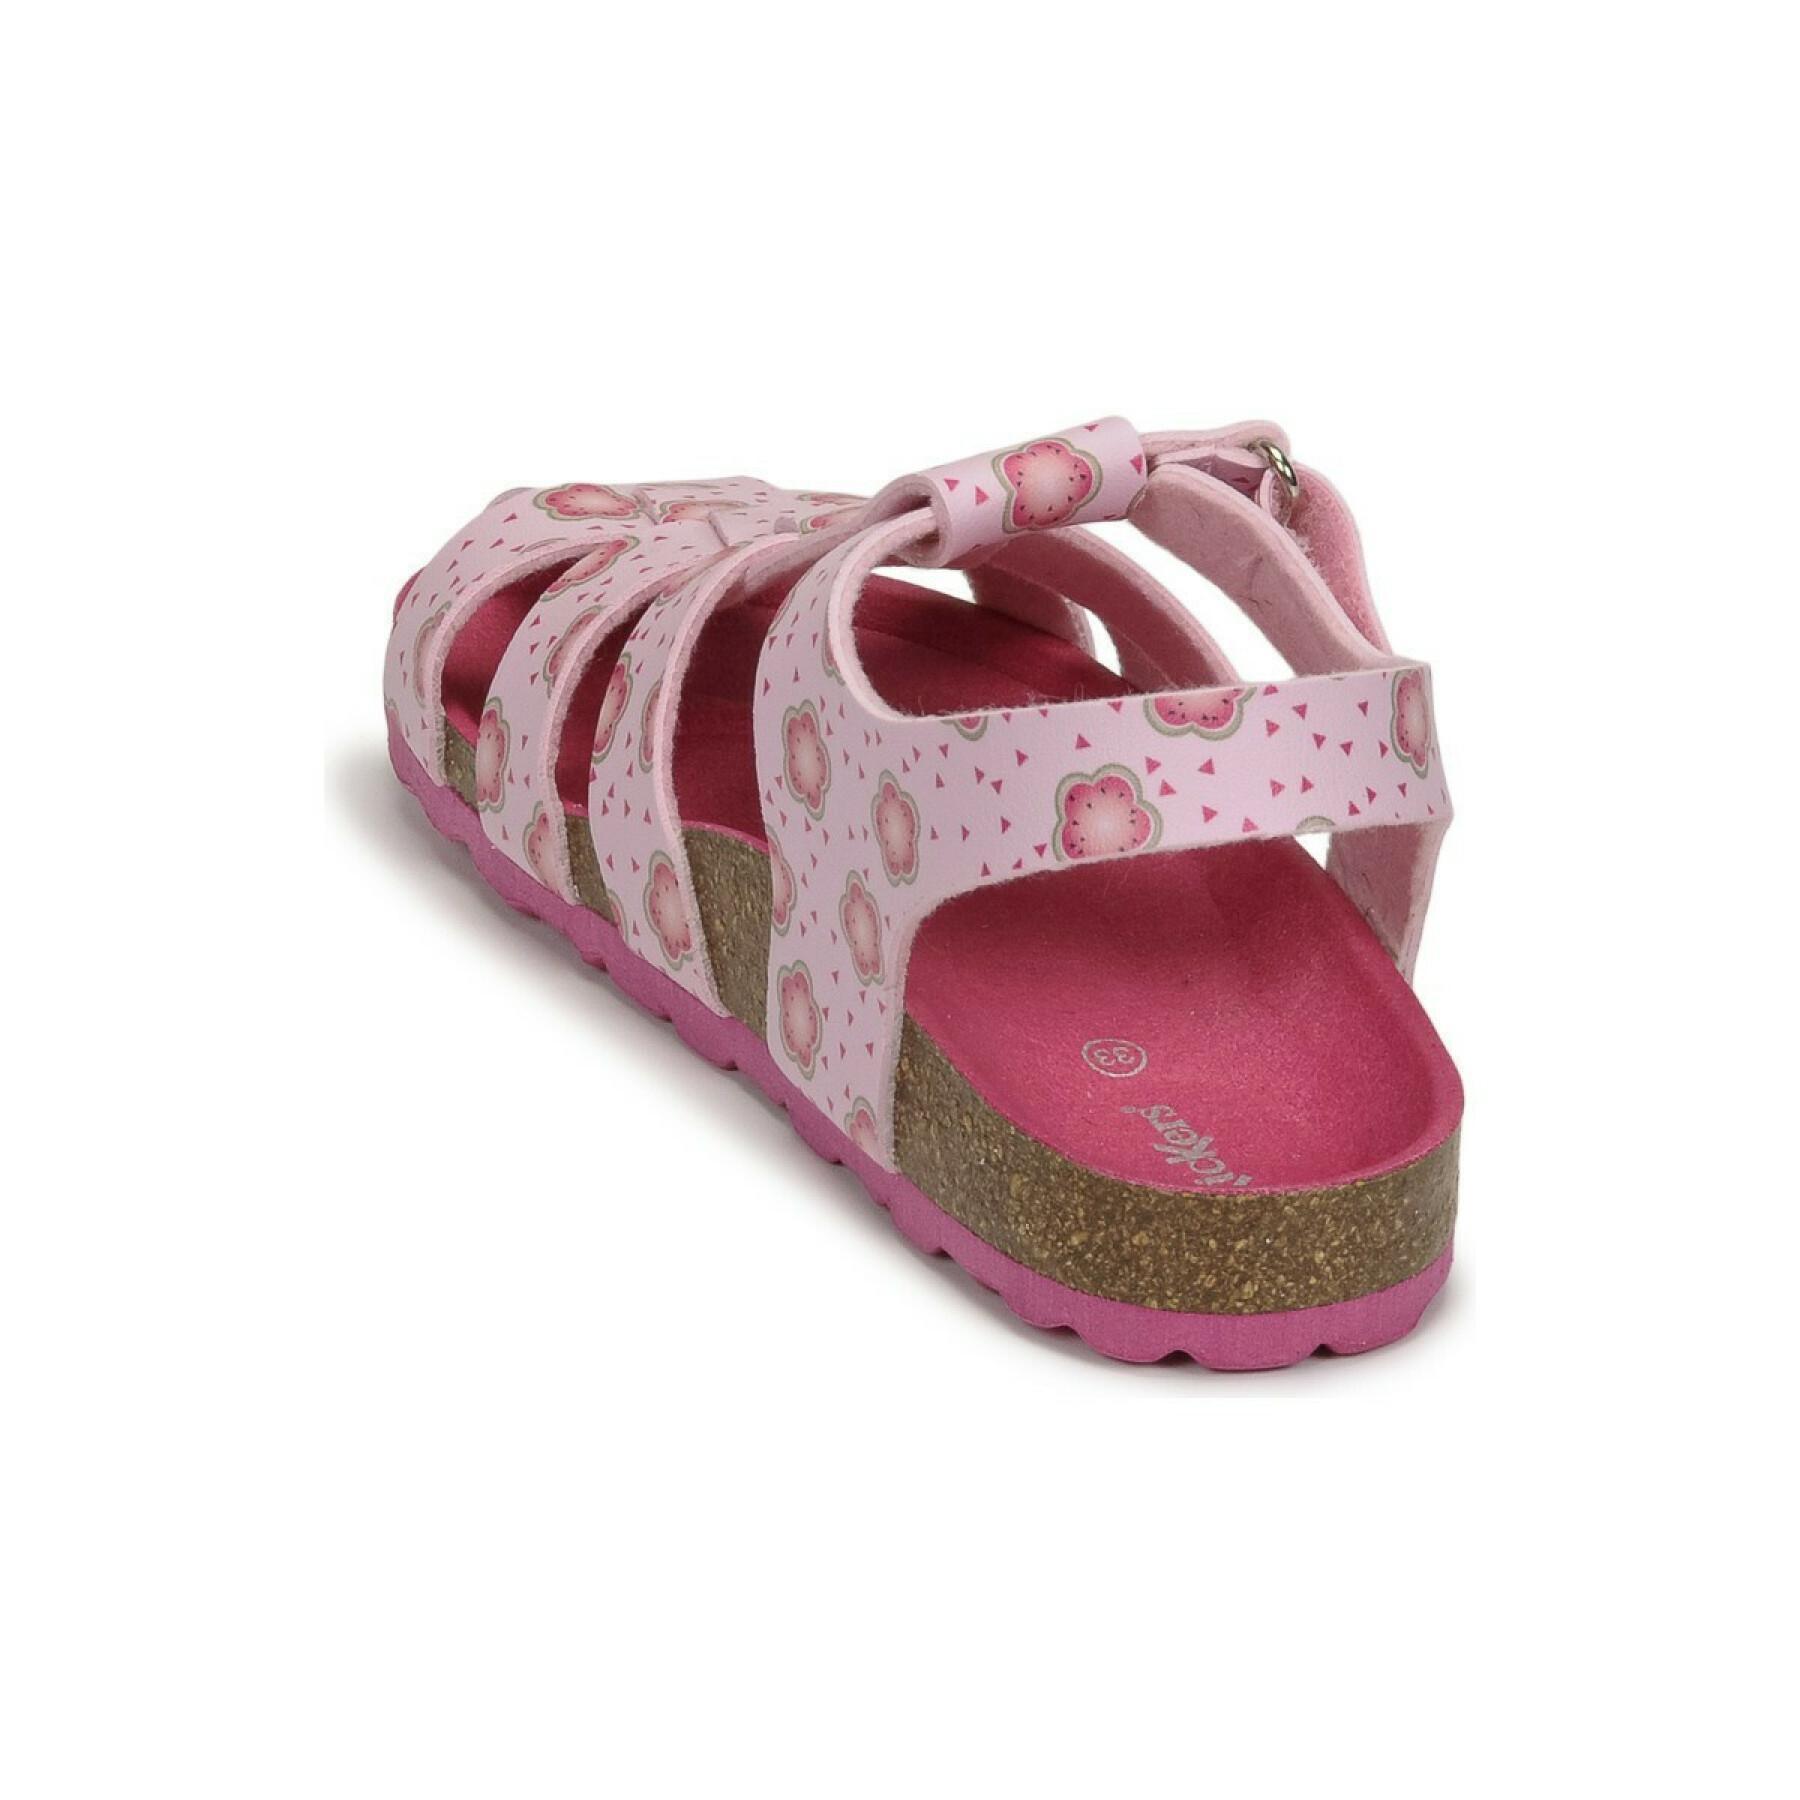 Girl's sandals Kickers Summertan